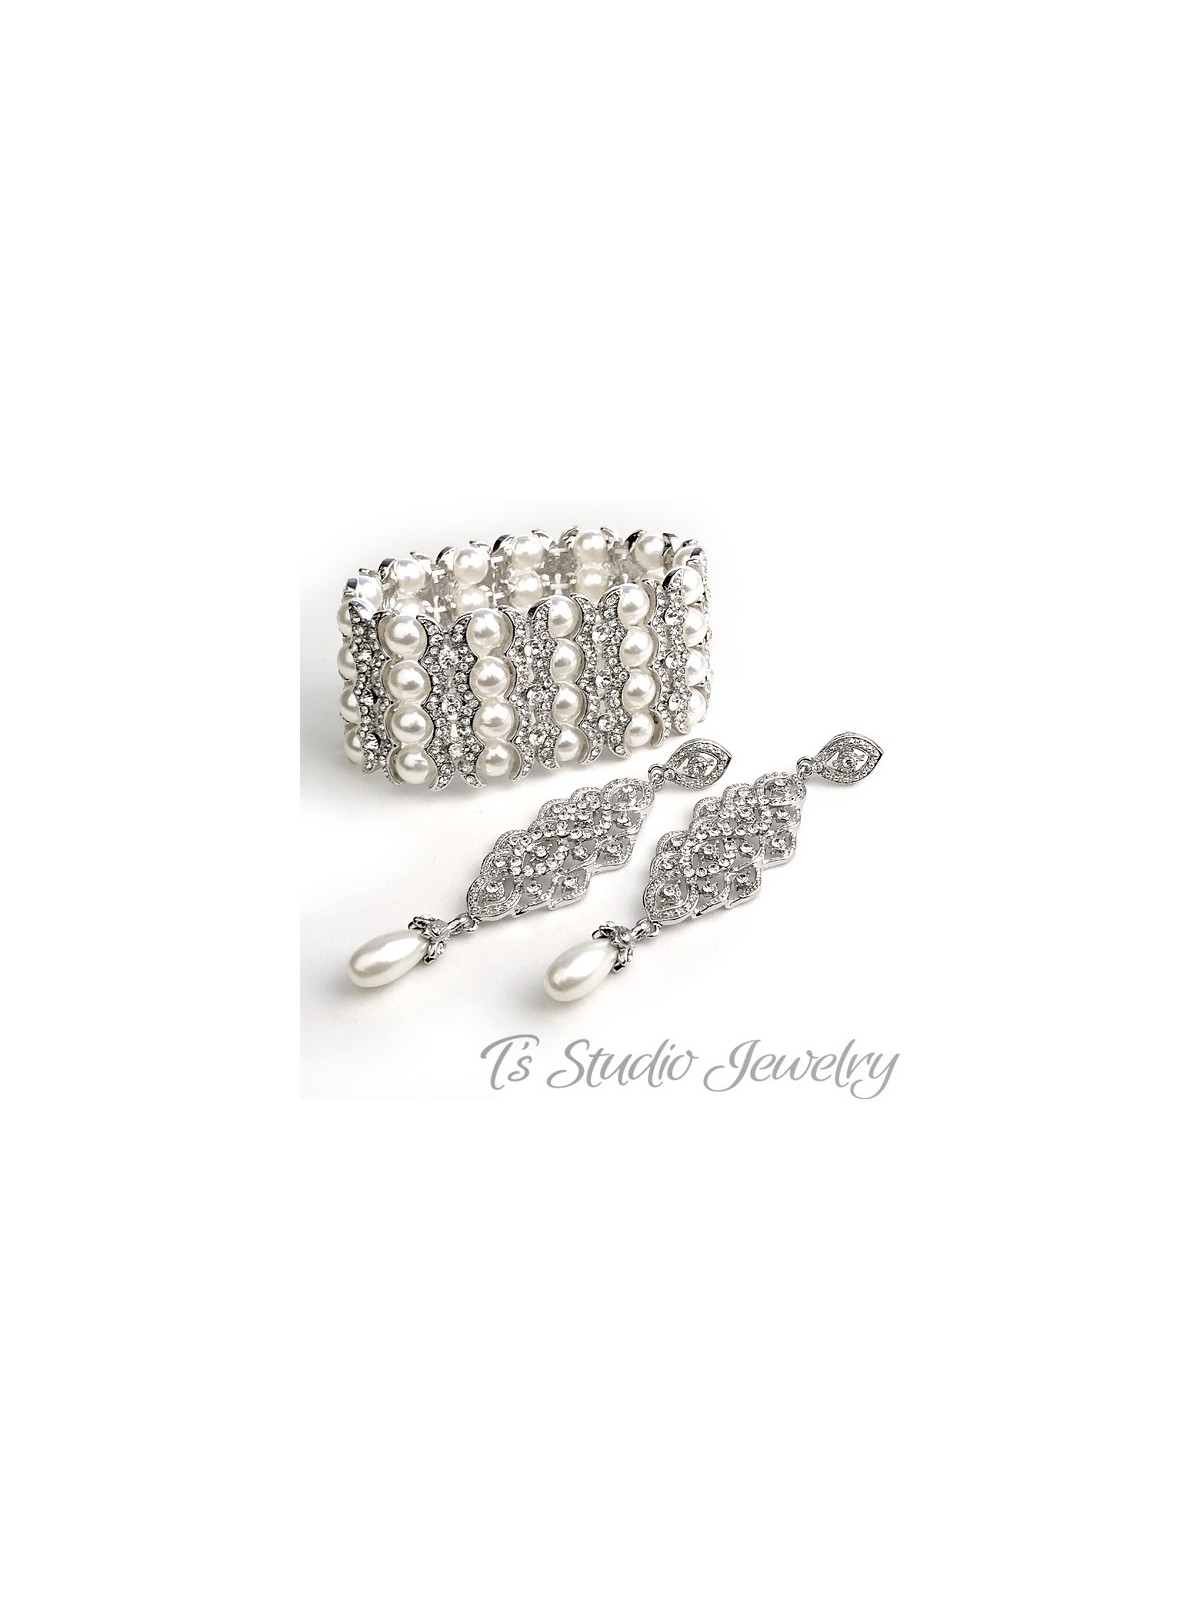 4-Strand Pearl & Rhinestone Cuff Bridal Bracelet & Chandelier Earrings Set